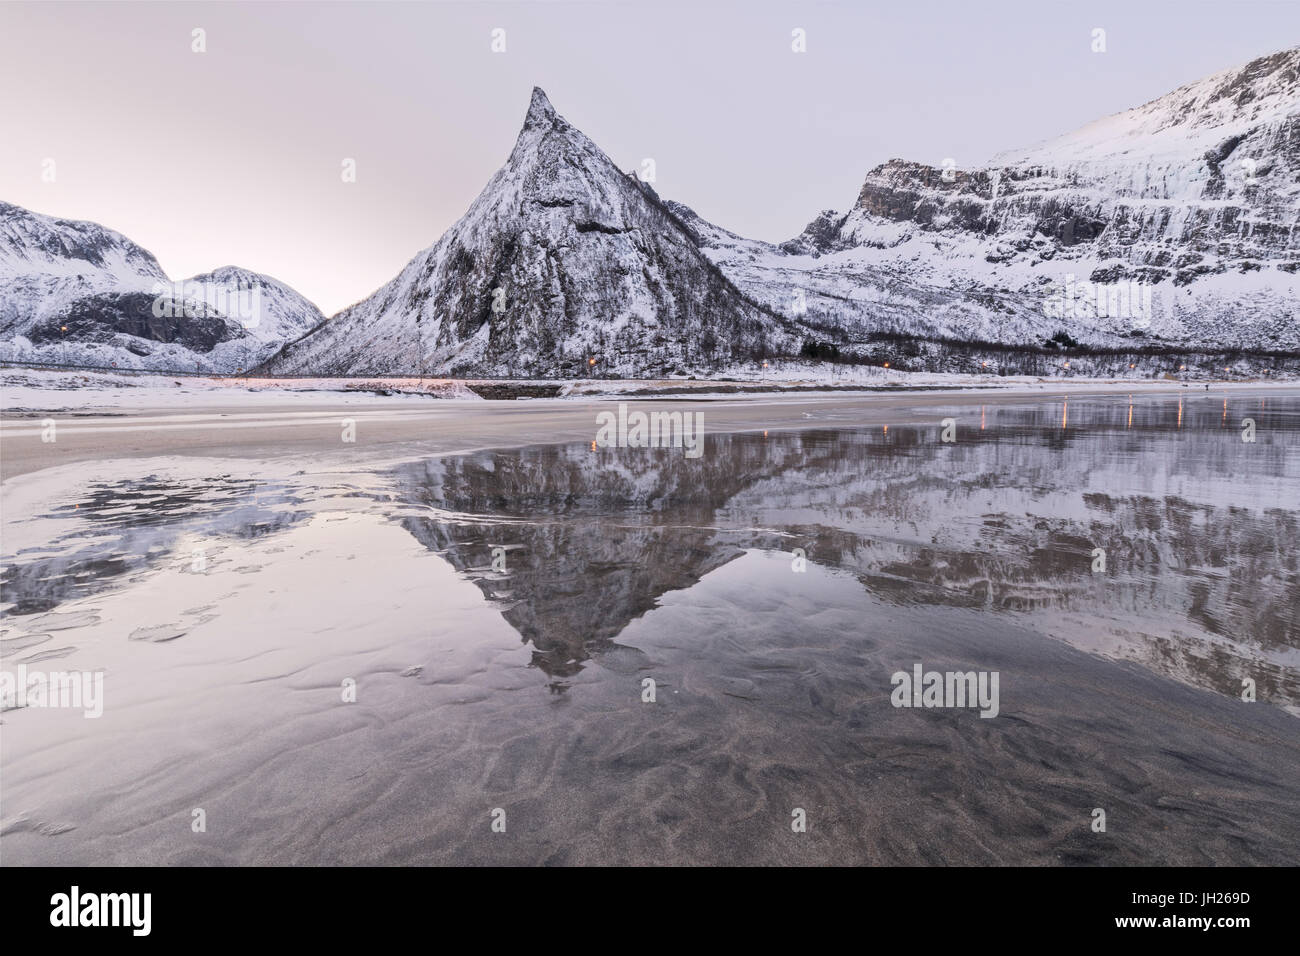 Vette innevate si riflette nel mare ghiacciato circondato dalla spiaggia sabbiosa di Alba, Ersfjord, Senja, Troms, Norvegia, Scandinavia, Europa Foto Stock